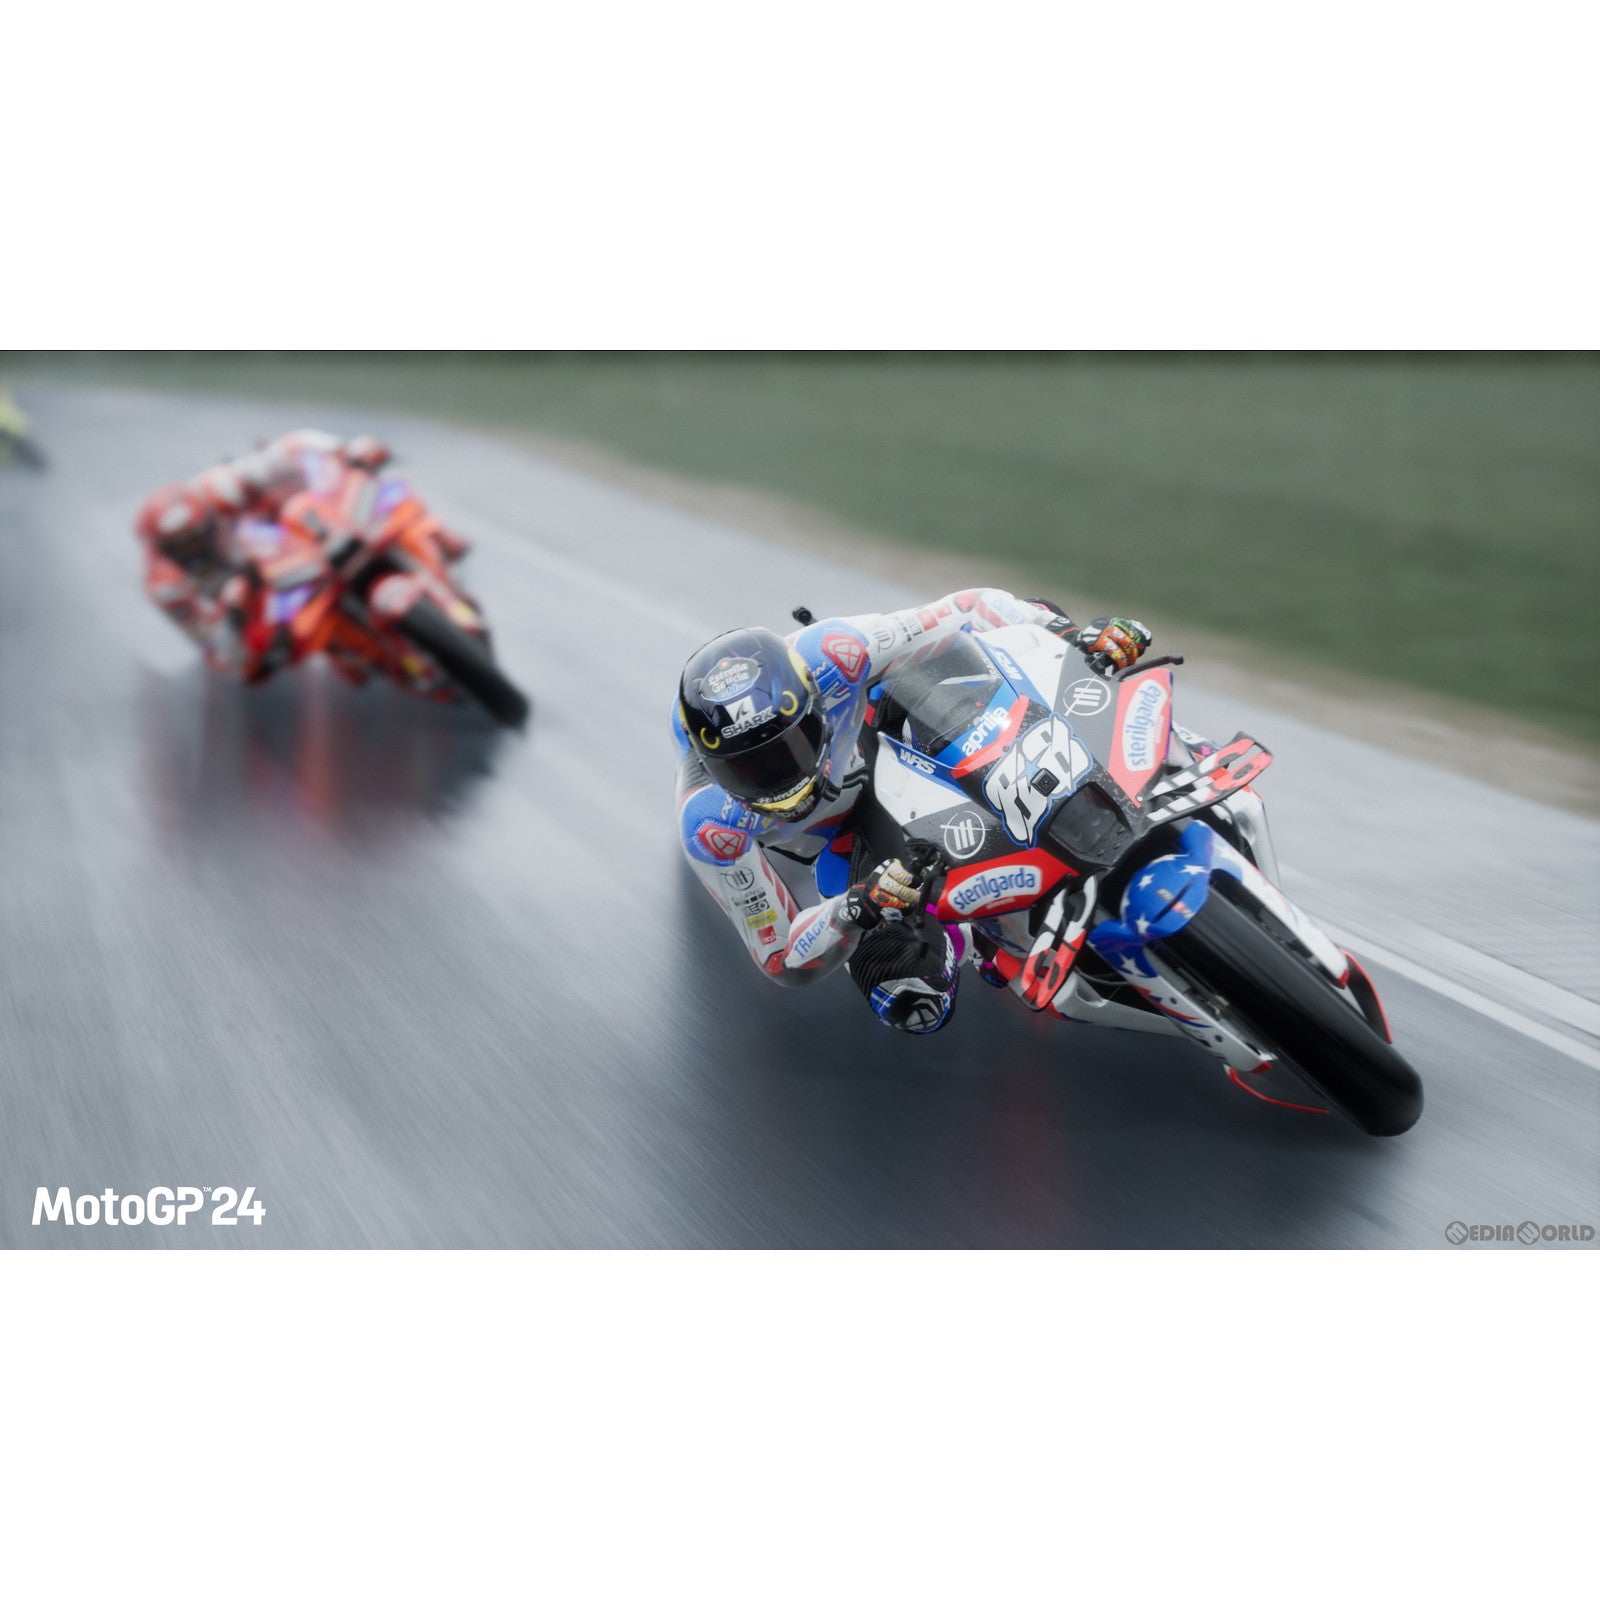 【予約前日出荷】[PS5]予約特典付(Nolan Helmet Liveries＆Test Suits DLC) MotoGP 24(モトジーピー 24)(20240613)